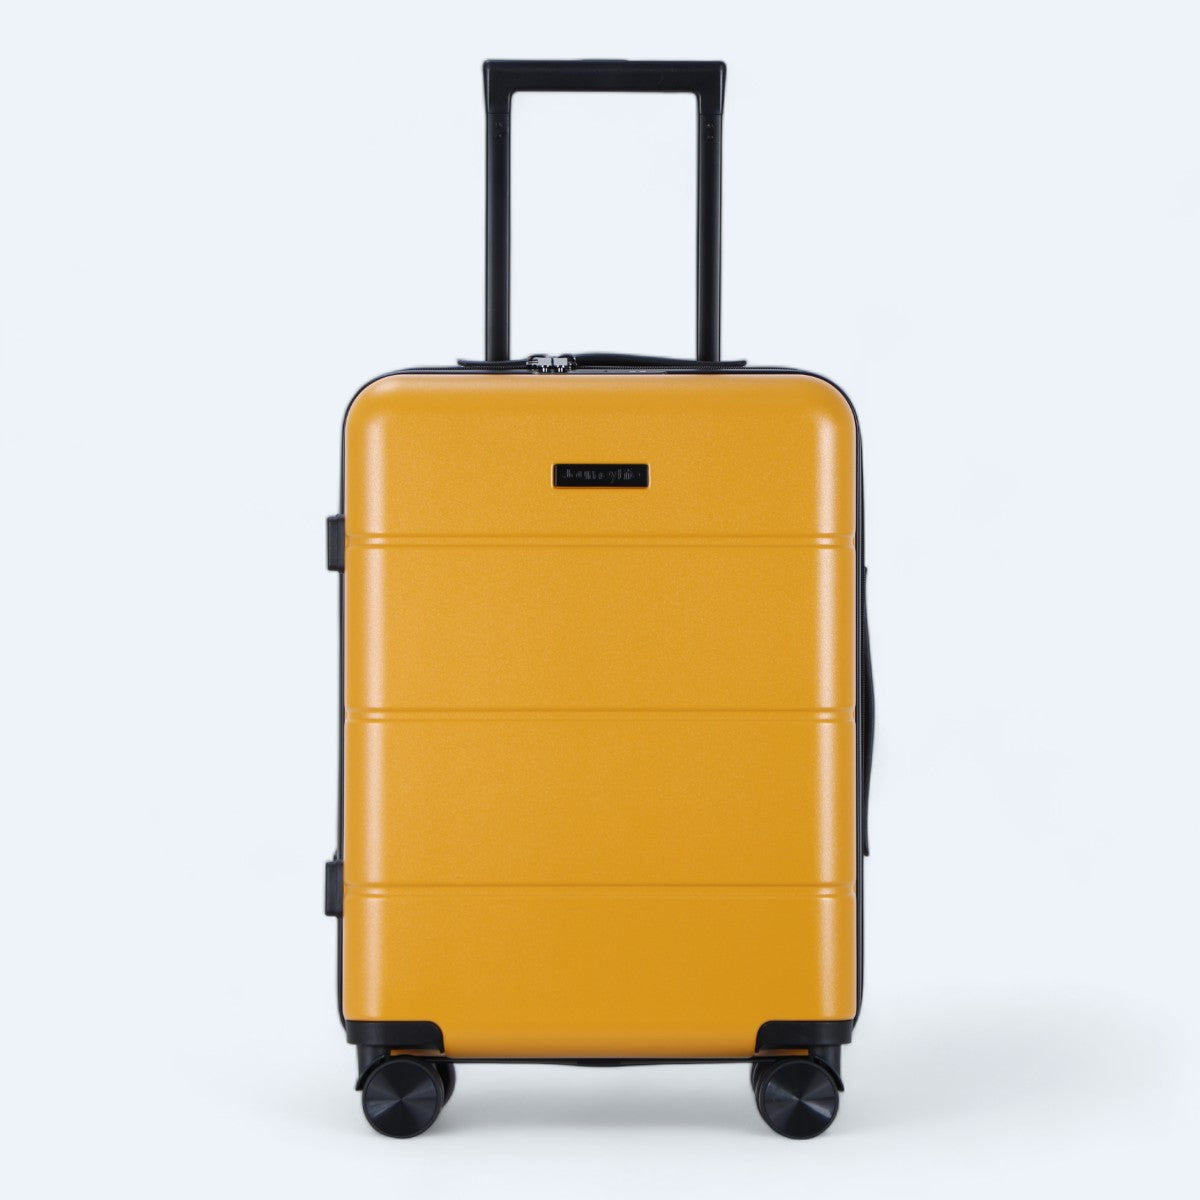  lille gul kuffert Journeylife explorer